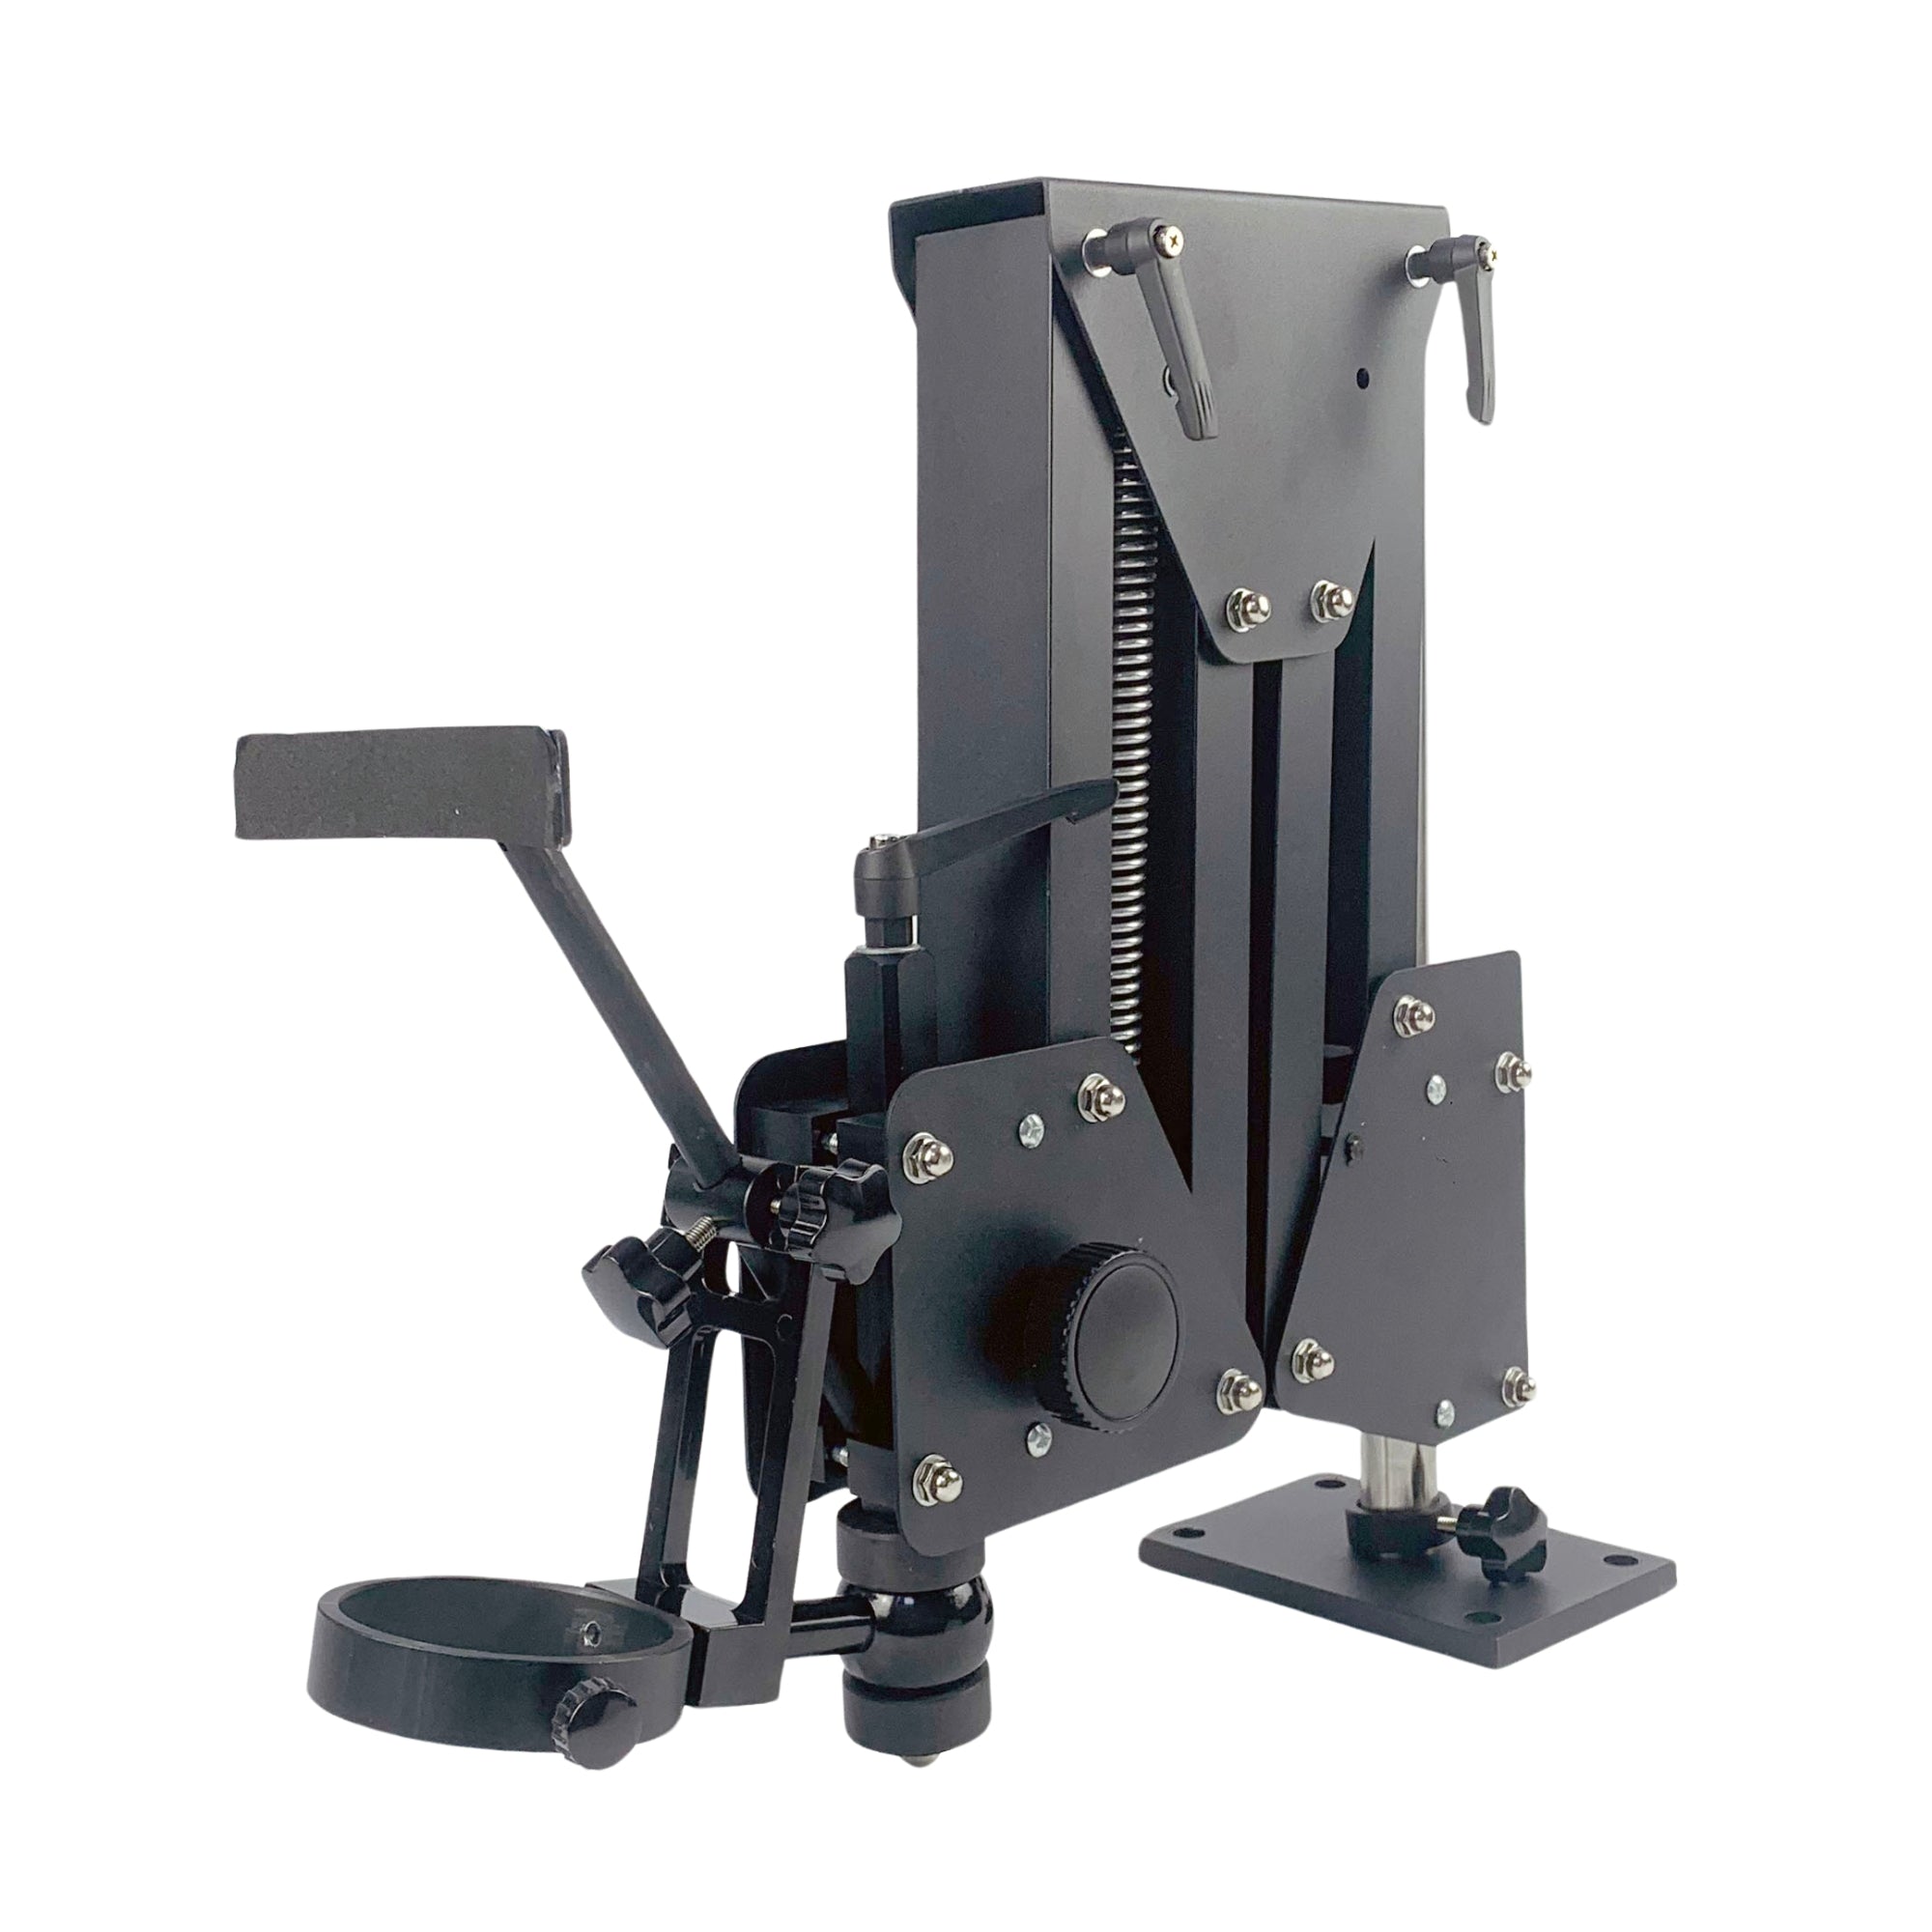 Ensemble de microscope phaser avec pied avec pied destiné à un montage fixe sur une table d'orfèvre ou de phaser